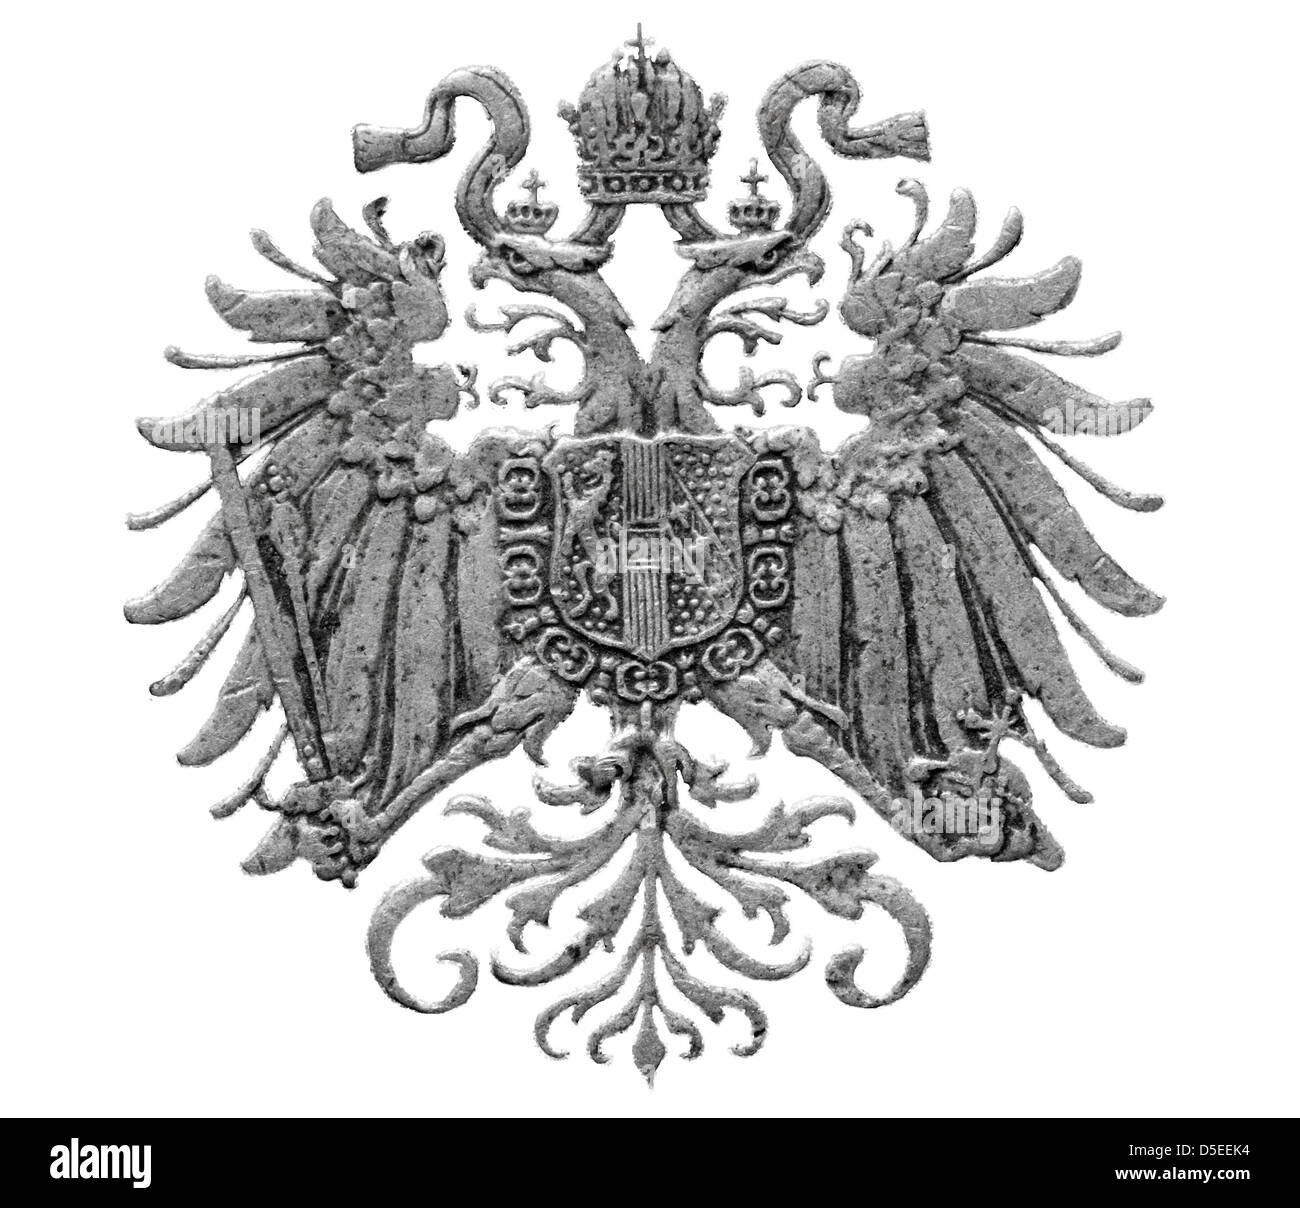 Stemma di impero austro-ungarico dal 10 Heller coin, Austria, 1915, su sfondo bianco Foto Stock